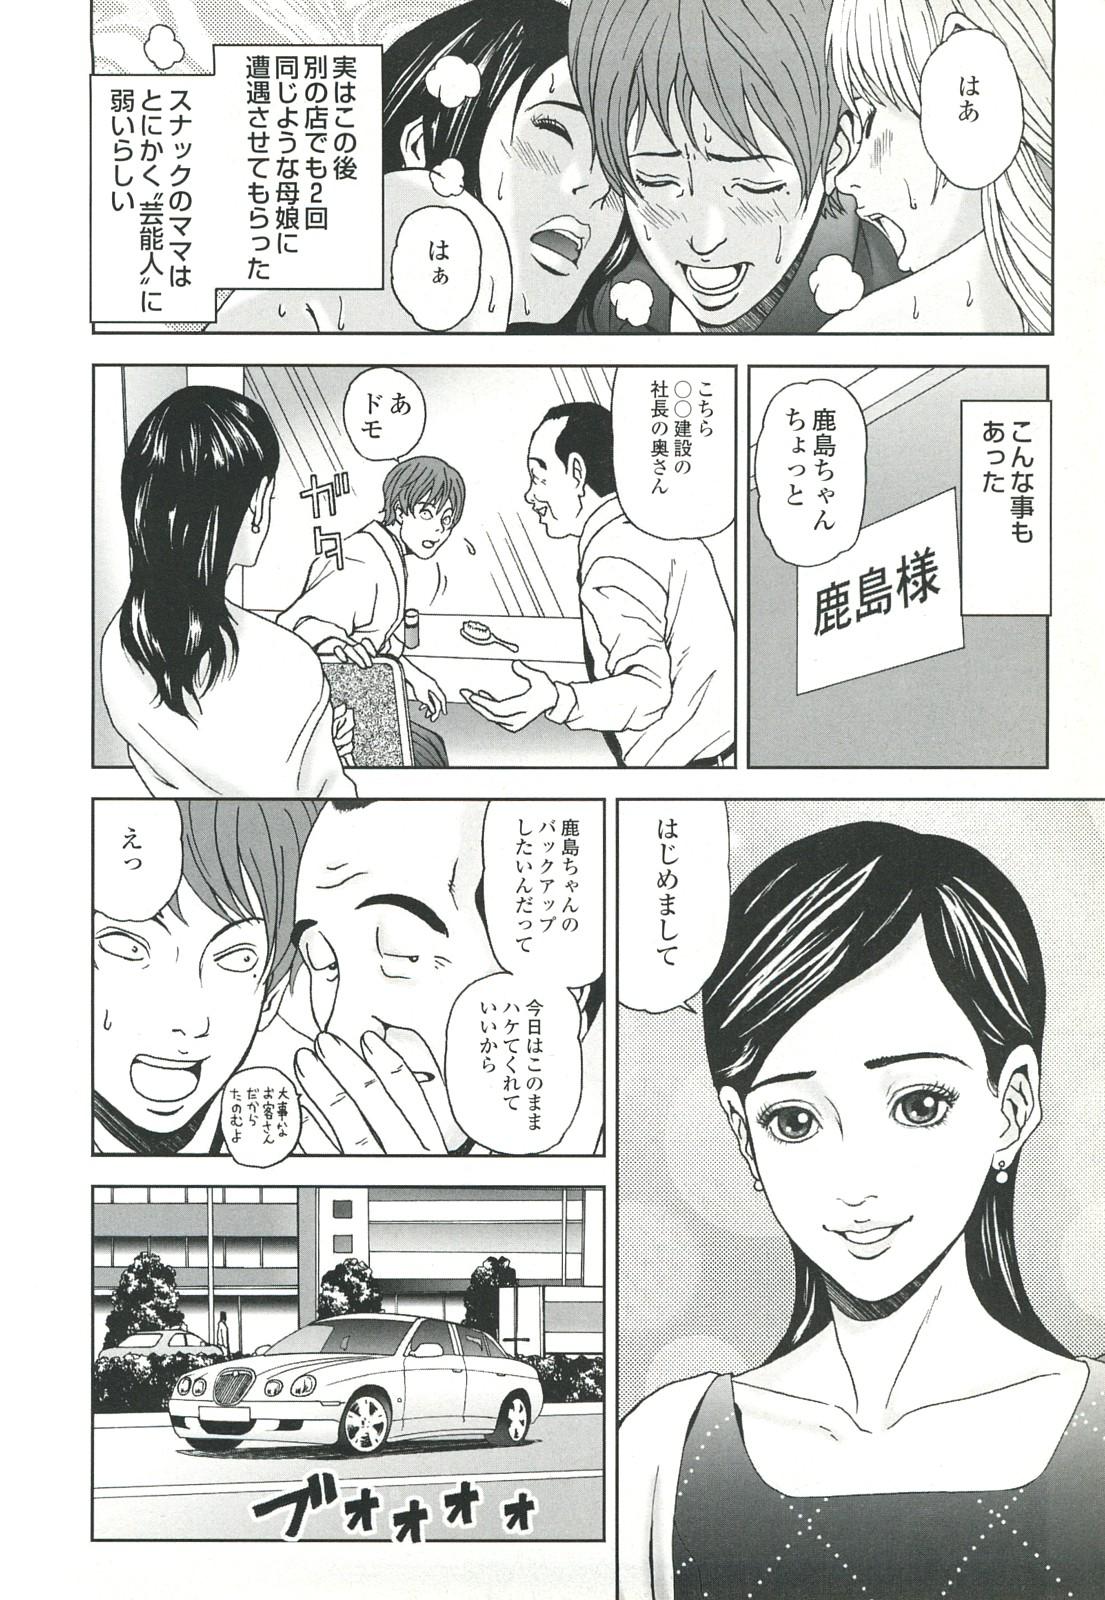 コミック裏モノJAPAN Vol.18 今井のりたつスペシャル号 33